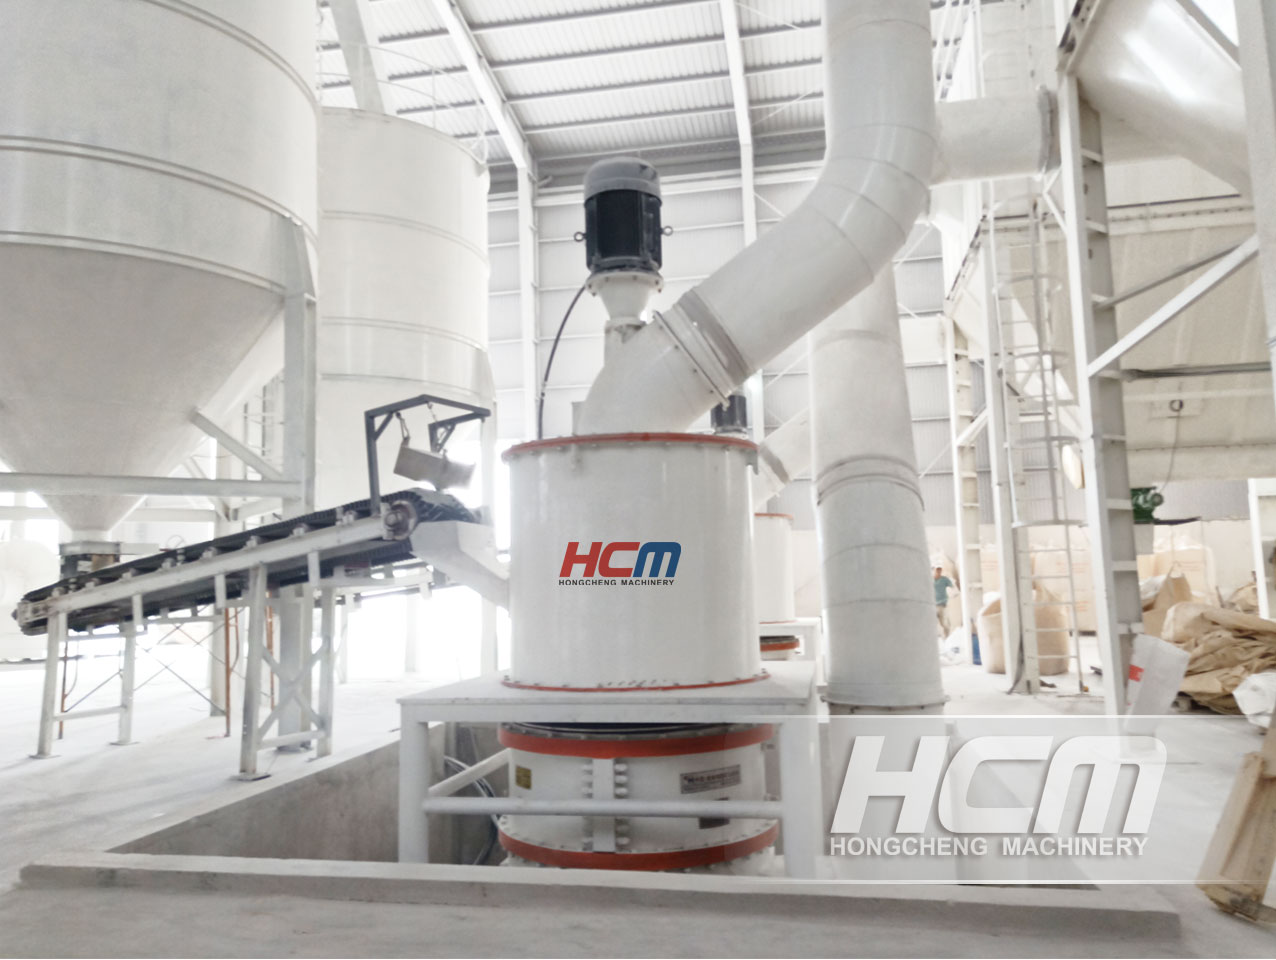 HCH1395 raske kaltsiumi (GCC) ülipeen rõngasrullveski kasutamine raske kaltsiumi (GCC) pulbri töötlemisel ja tootmisel|Raske kaltsiumi (GCC) ülipeen veski müügiks